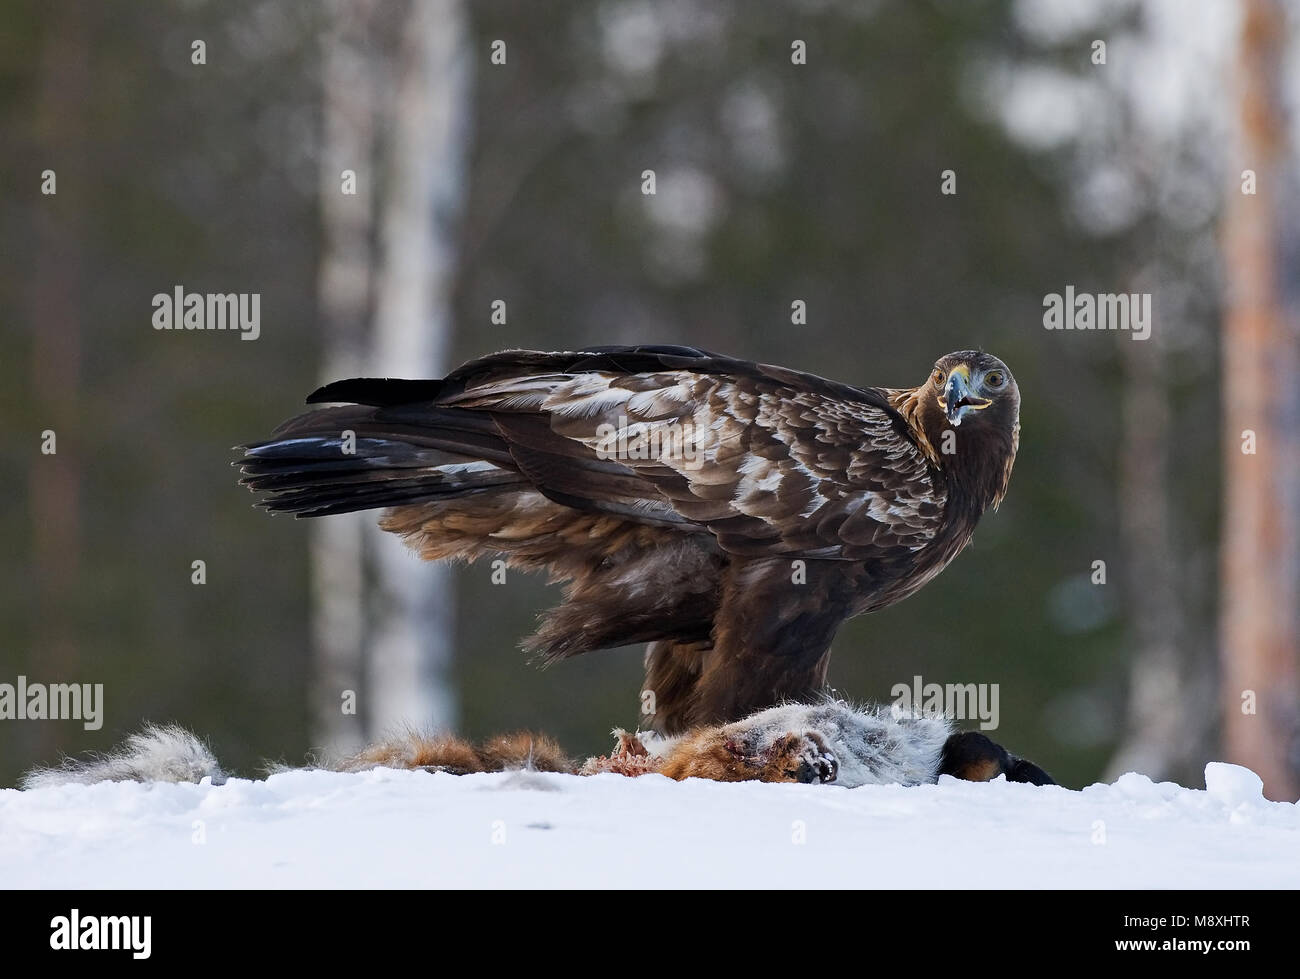 Golden Eagle permanent adultes dans la neige sur les proies ; Steenarend staand volwassen dans de prooi en op Banque D'Images